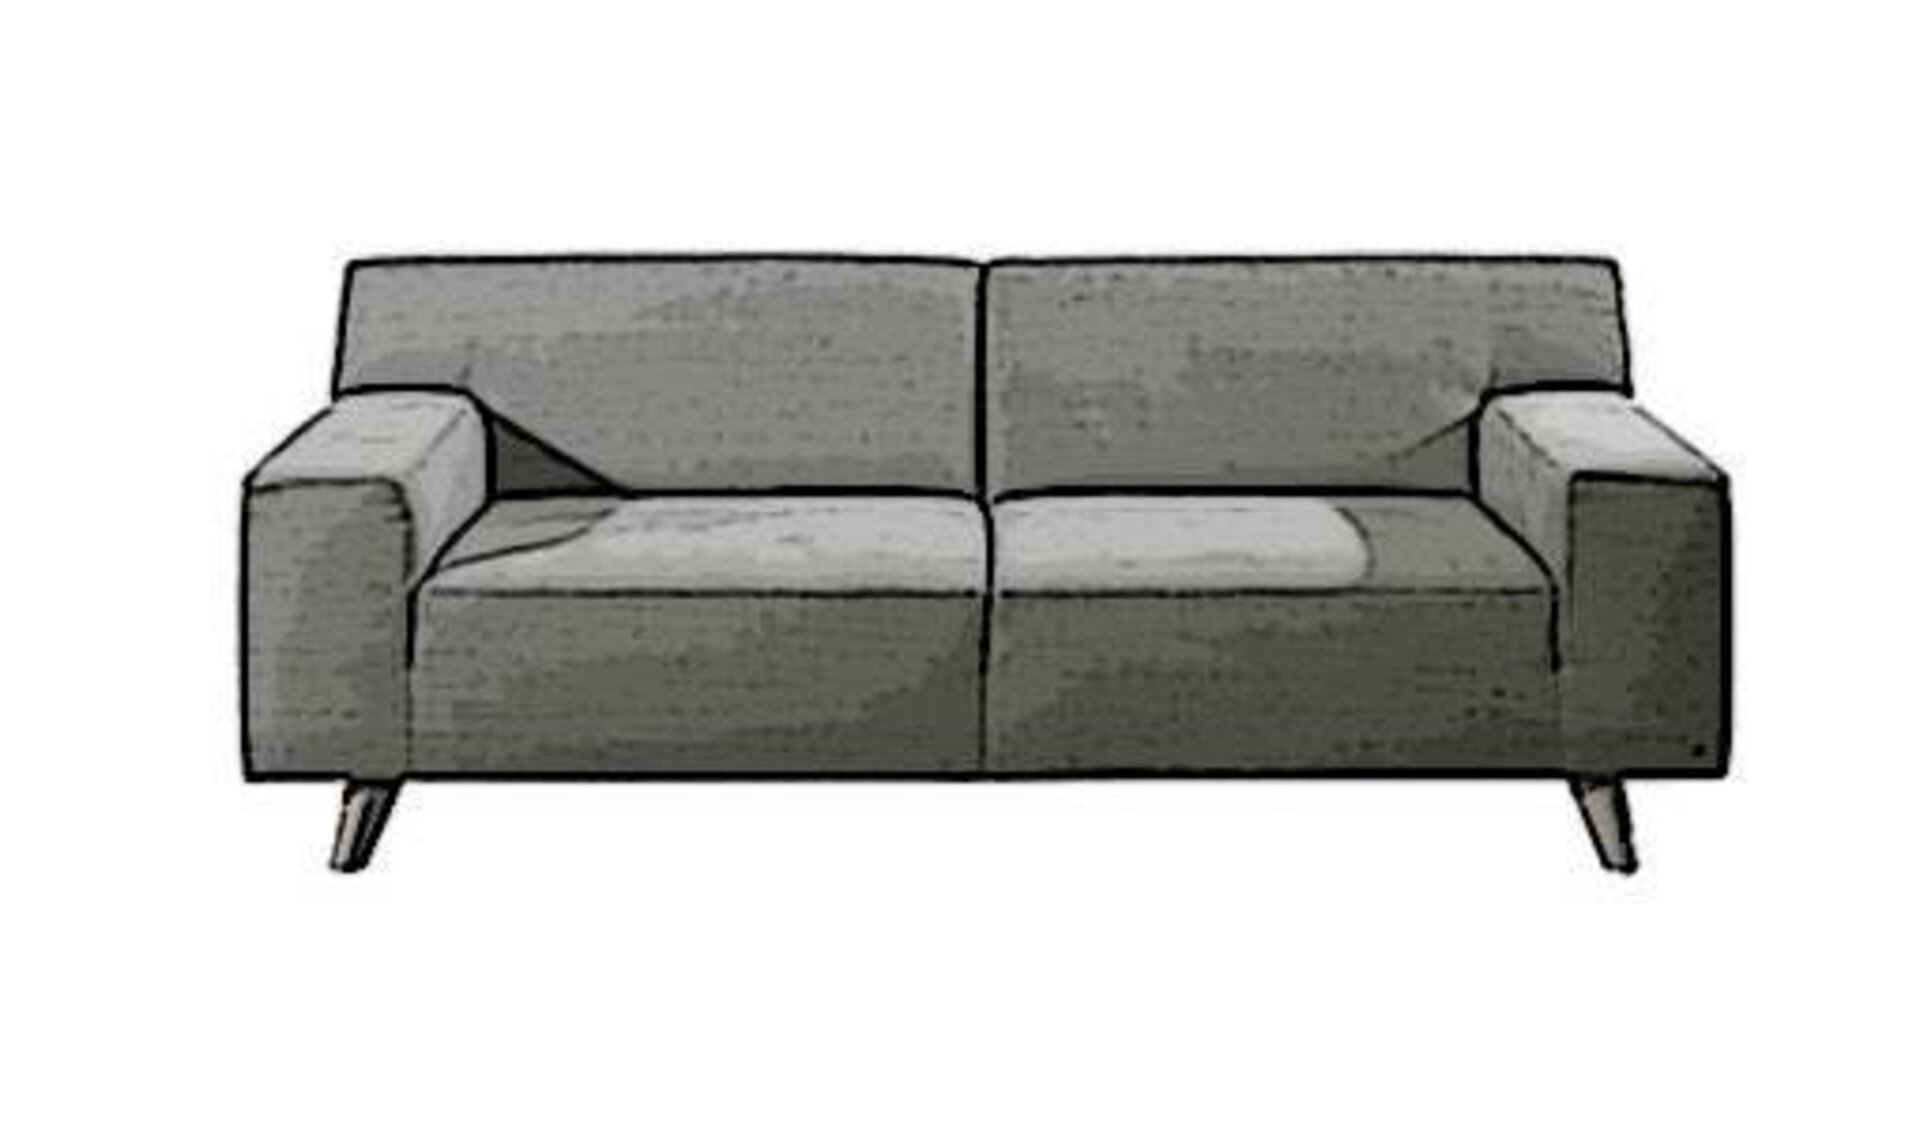 Icon für Sofa und Couches ist ein Zweisitzer-Sofa mit Stoffbezug.